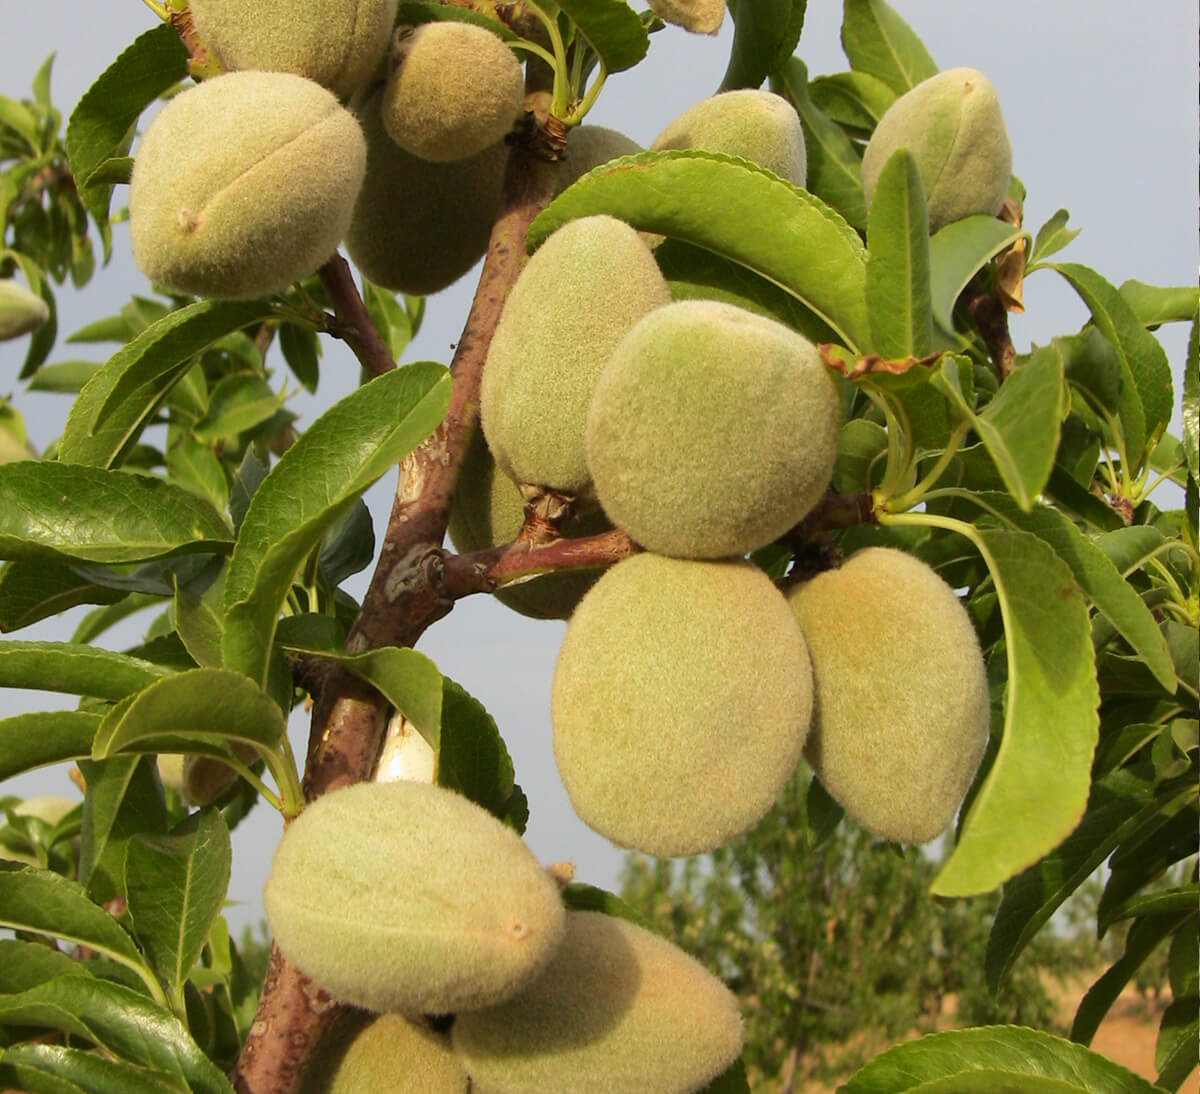 Livraison GRATUITE sur toute la Tunisie  OPA Mélange de fruit sec - Salé -  1 KG ( Amande Achek - Pistache - Noix de Cajou - Noisette ) ➡️Noix de cajou